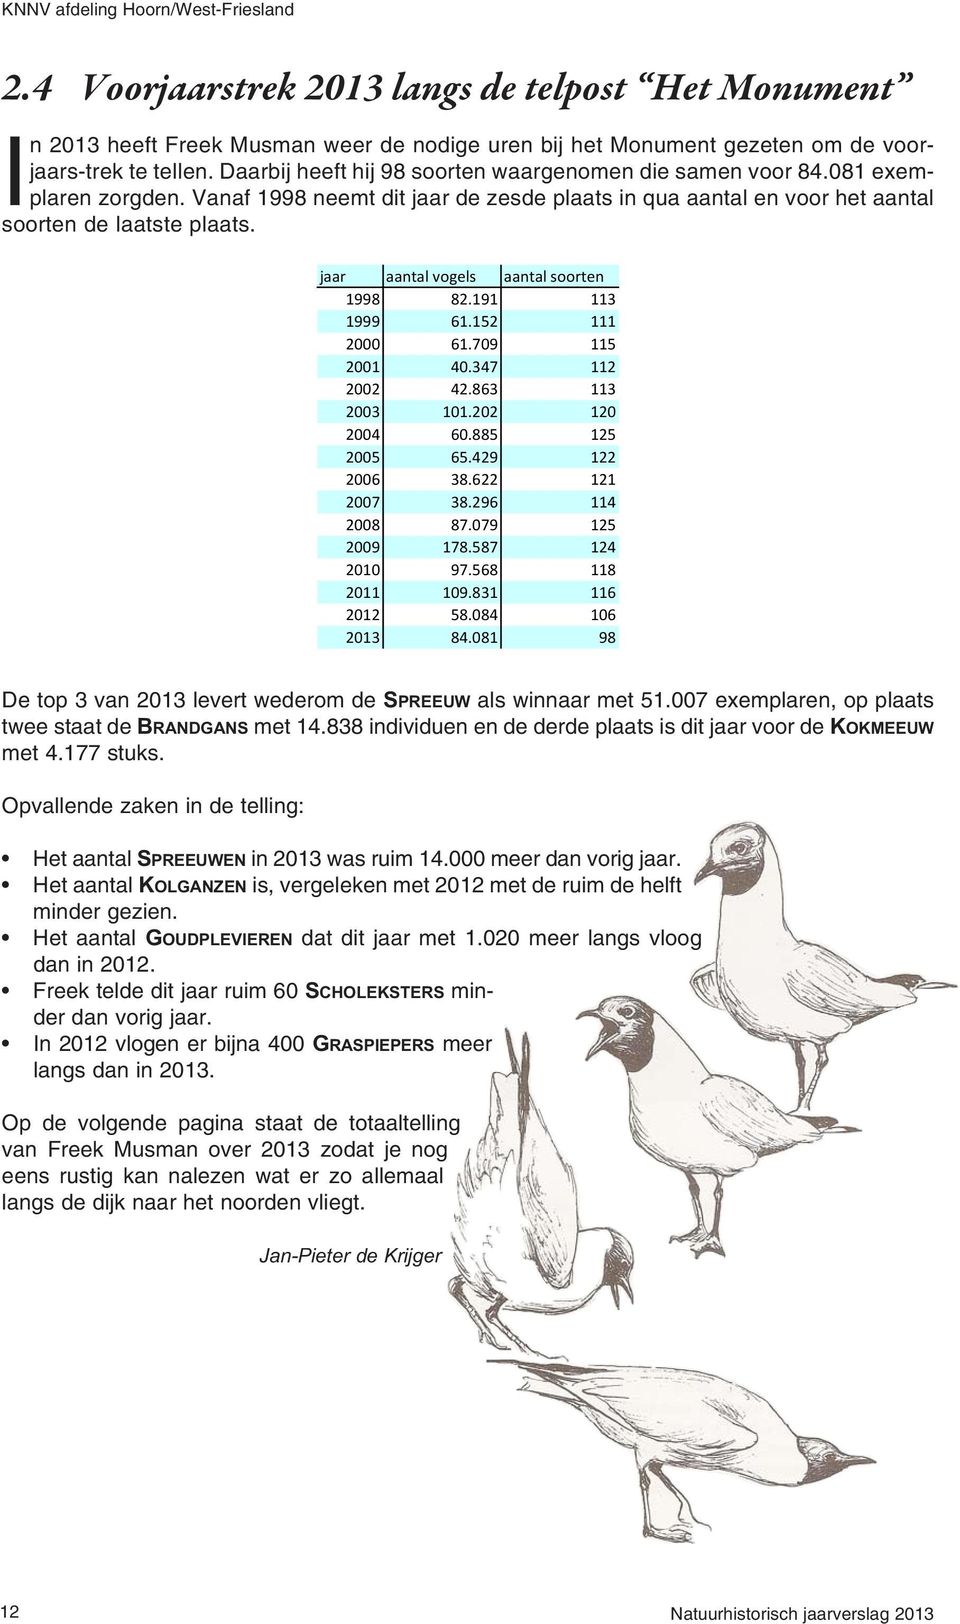 jaar aantal vogels aantal soorten 1998 82.191 113 1999 61.152 111 2000 61.709 115 2001 40.347 112 2002 42.863 113 2003 101.202 120 2004 60.885 125 2005 65.429 122 2006 38.622 121 2007 38.